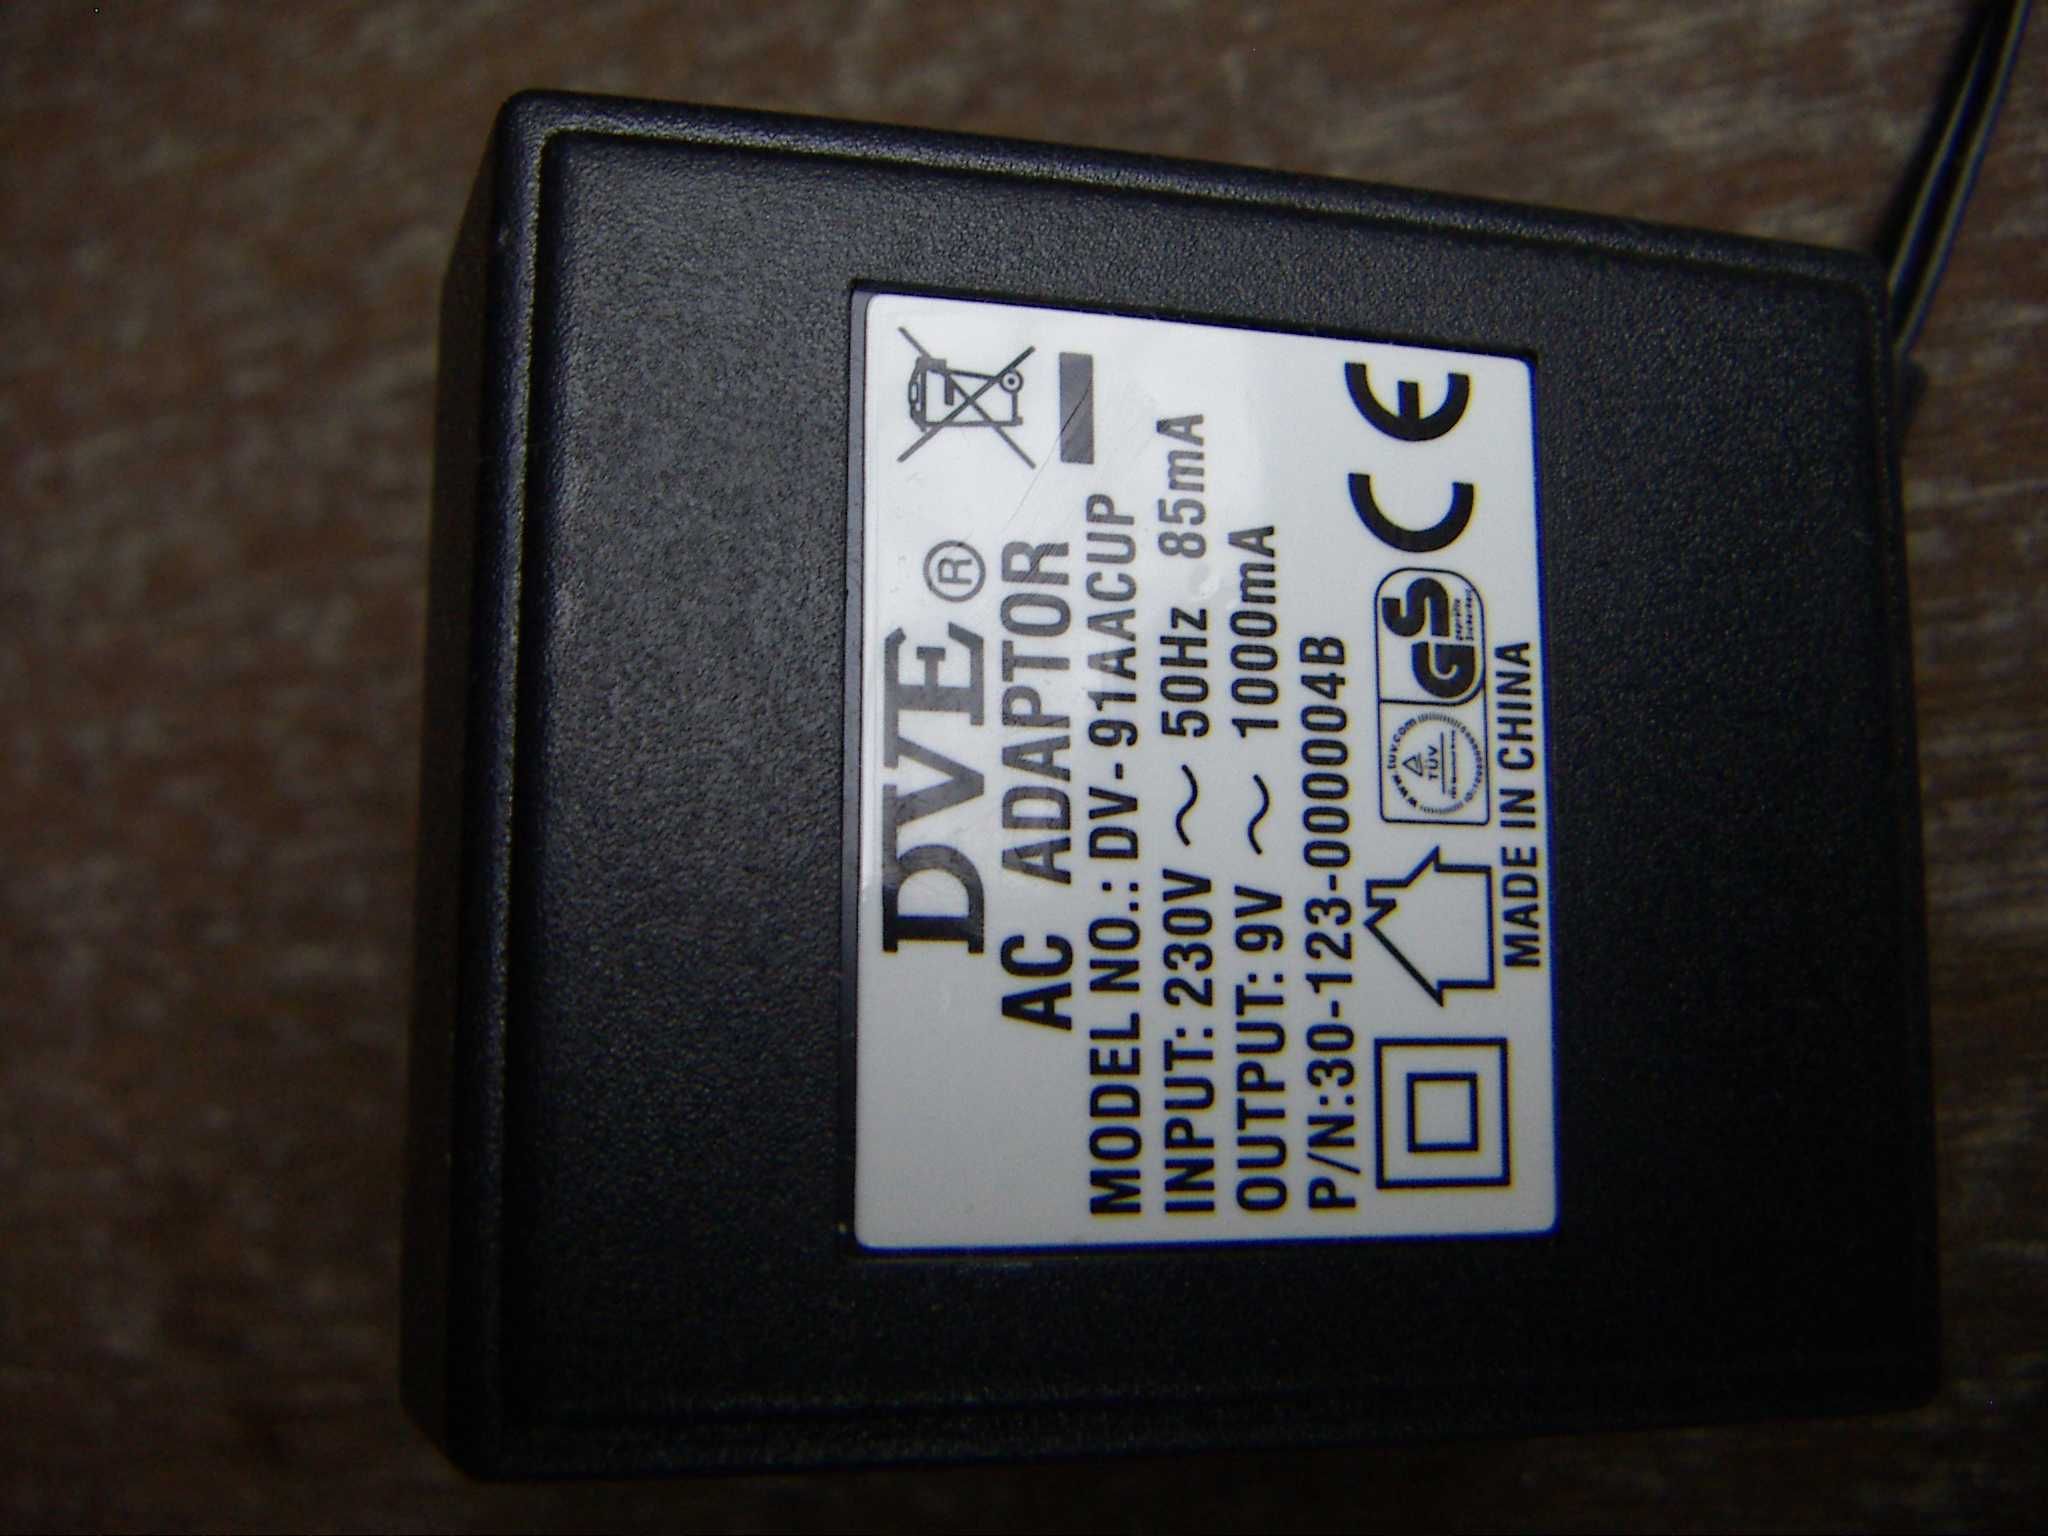 Блок питания - адаптер переменного тока 9 вольт 1 ампер